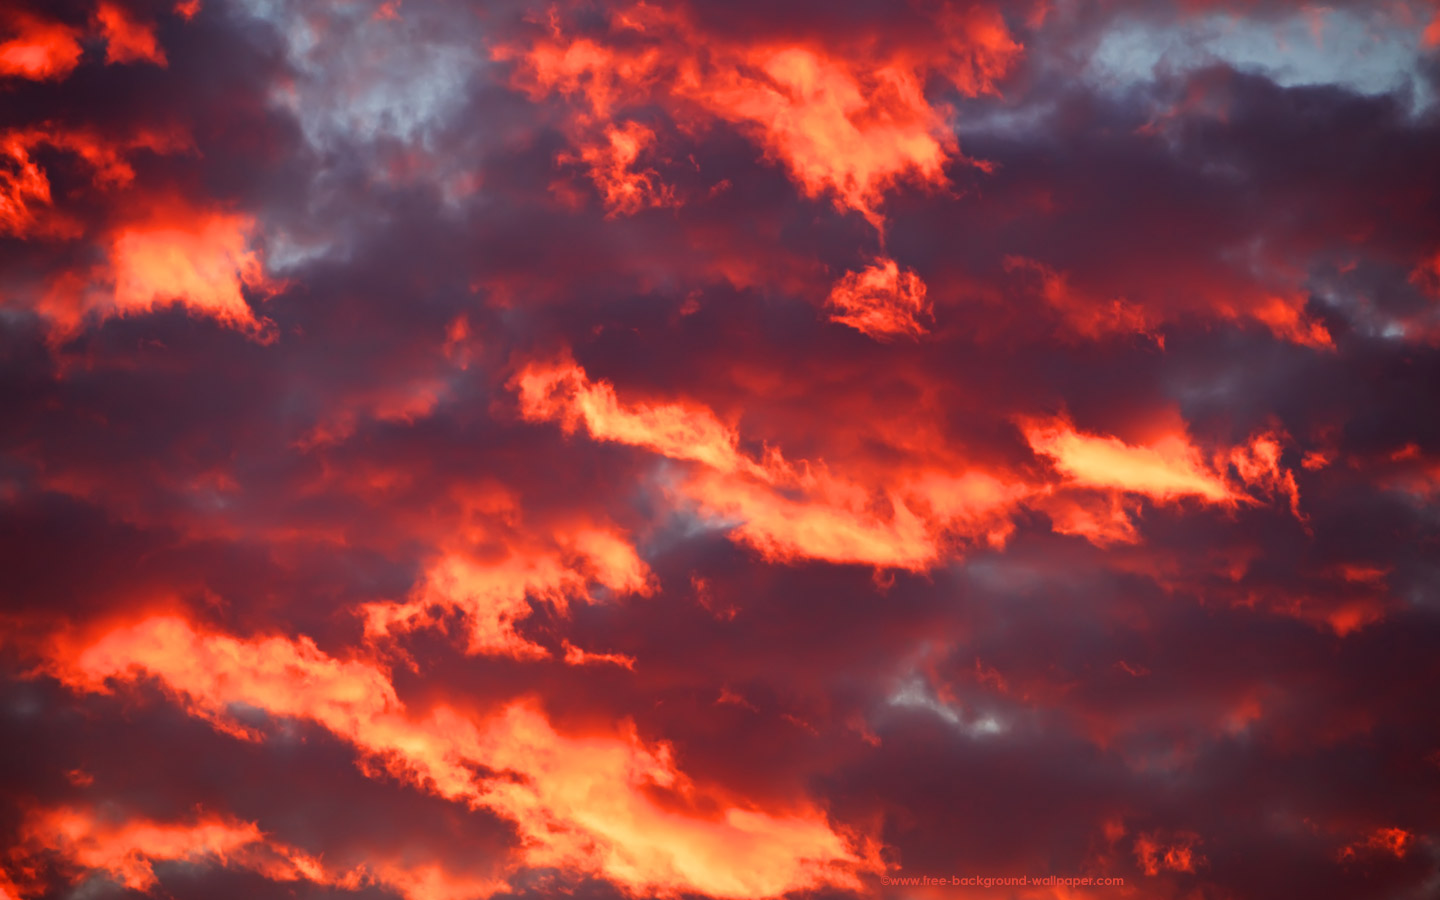 불타는 벽지,하늘,구름,잔광,아침에 붉은 하늘,빨간